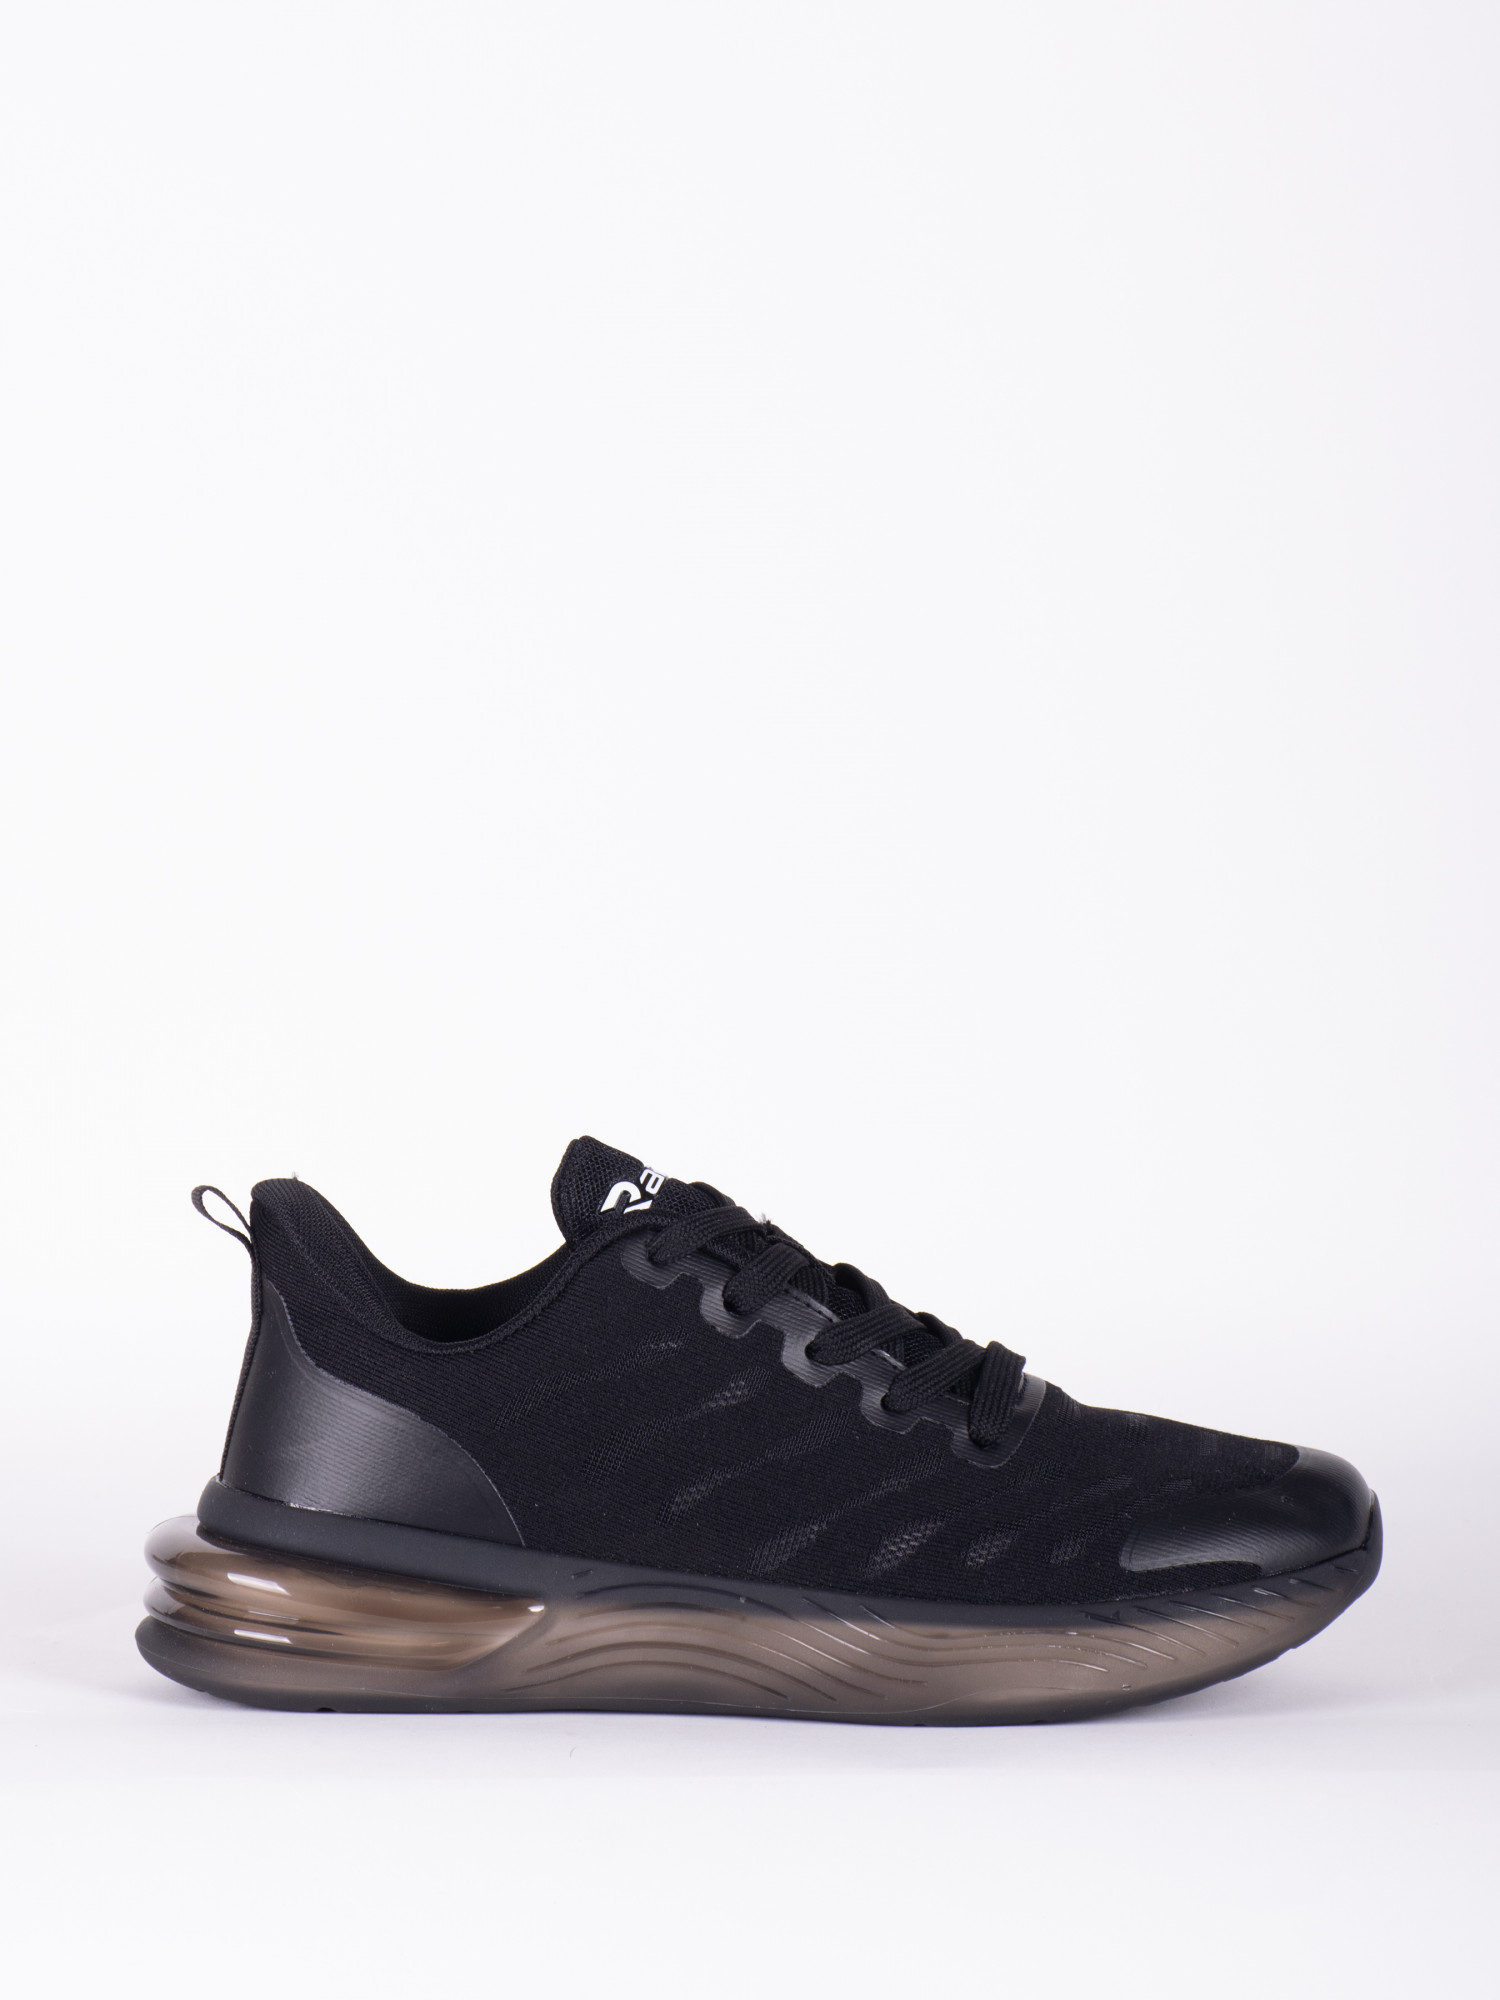 Кросівки жіночі Radder Seine чорні 402206-010 изображение 2